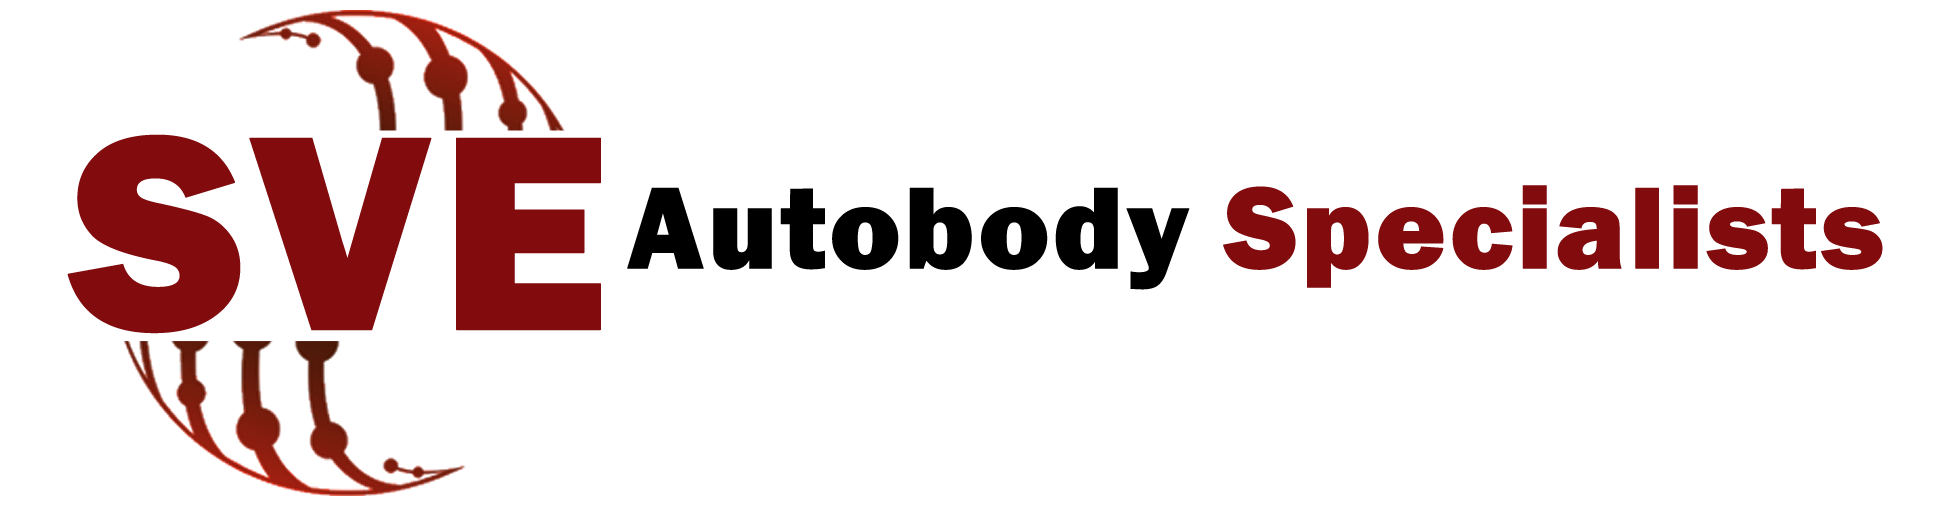 SVE Autobody